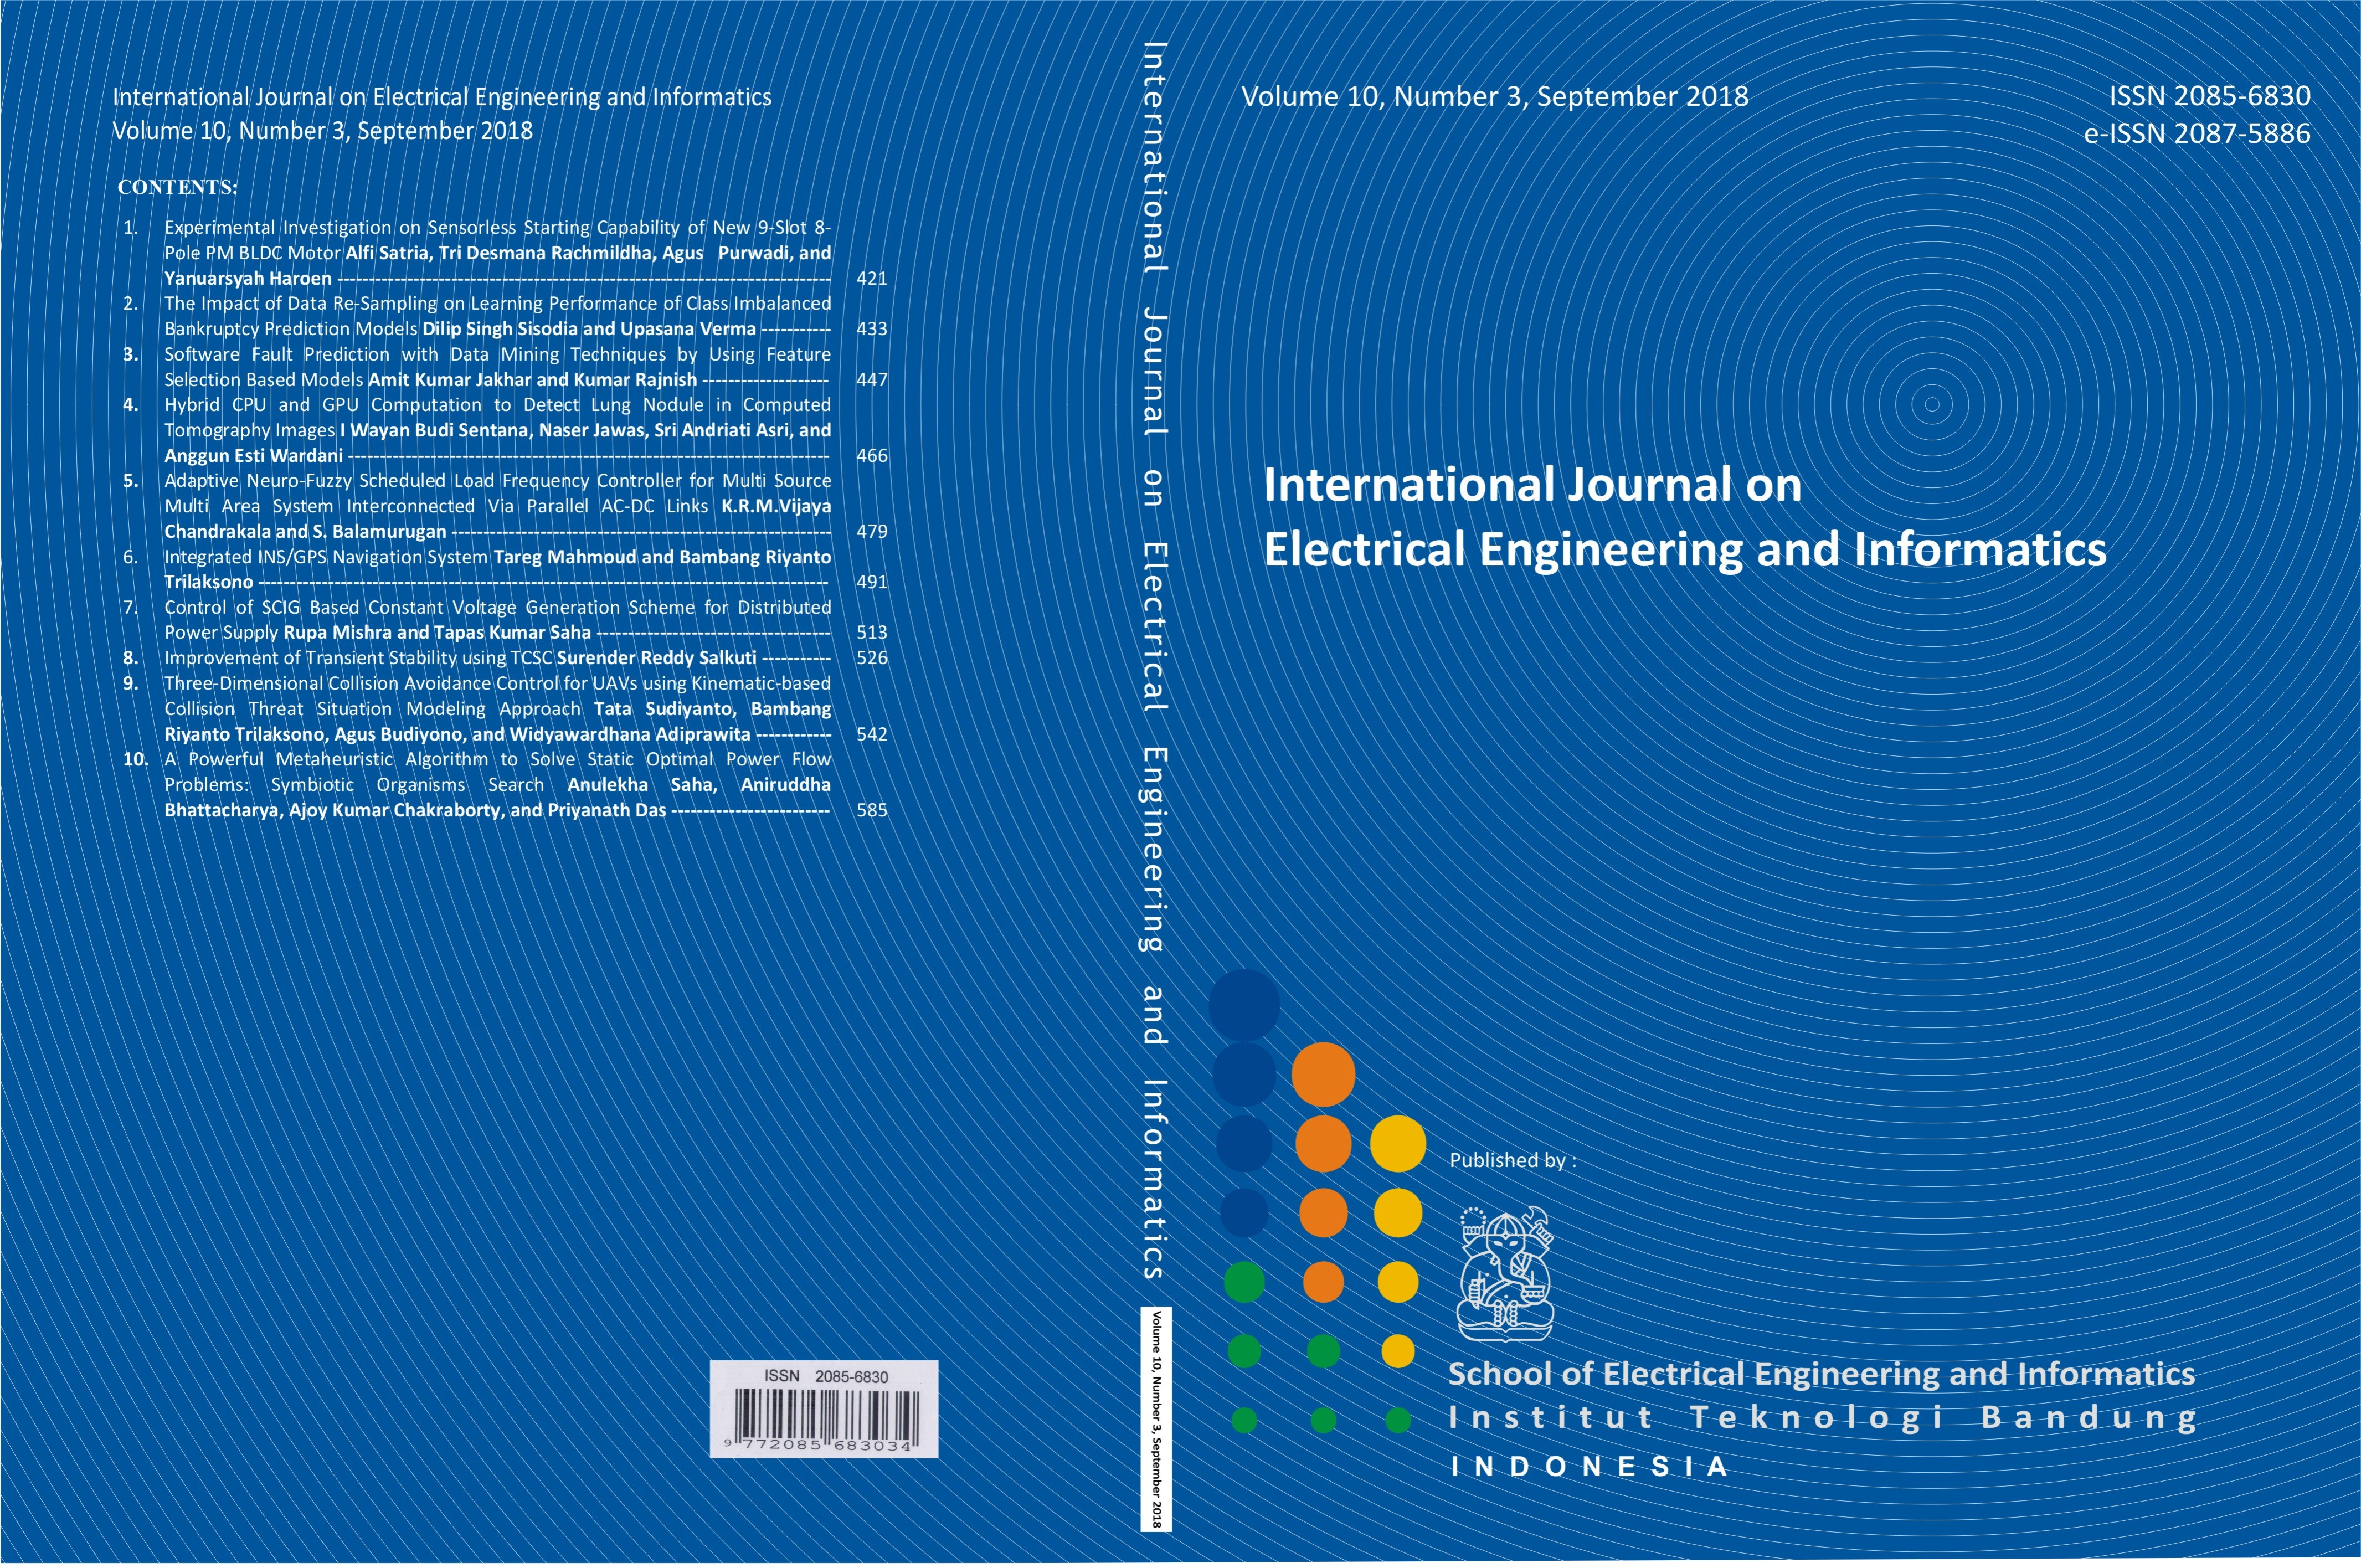 Journal cover Vol. 10 No. 3 September 2018